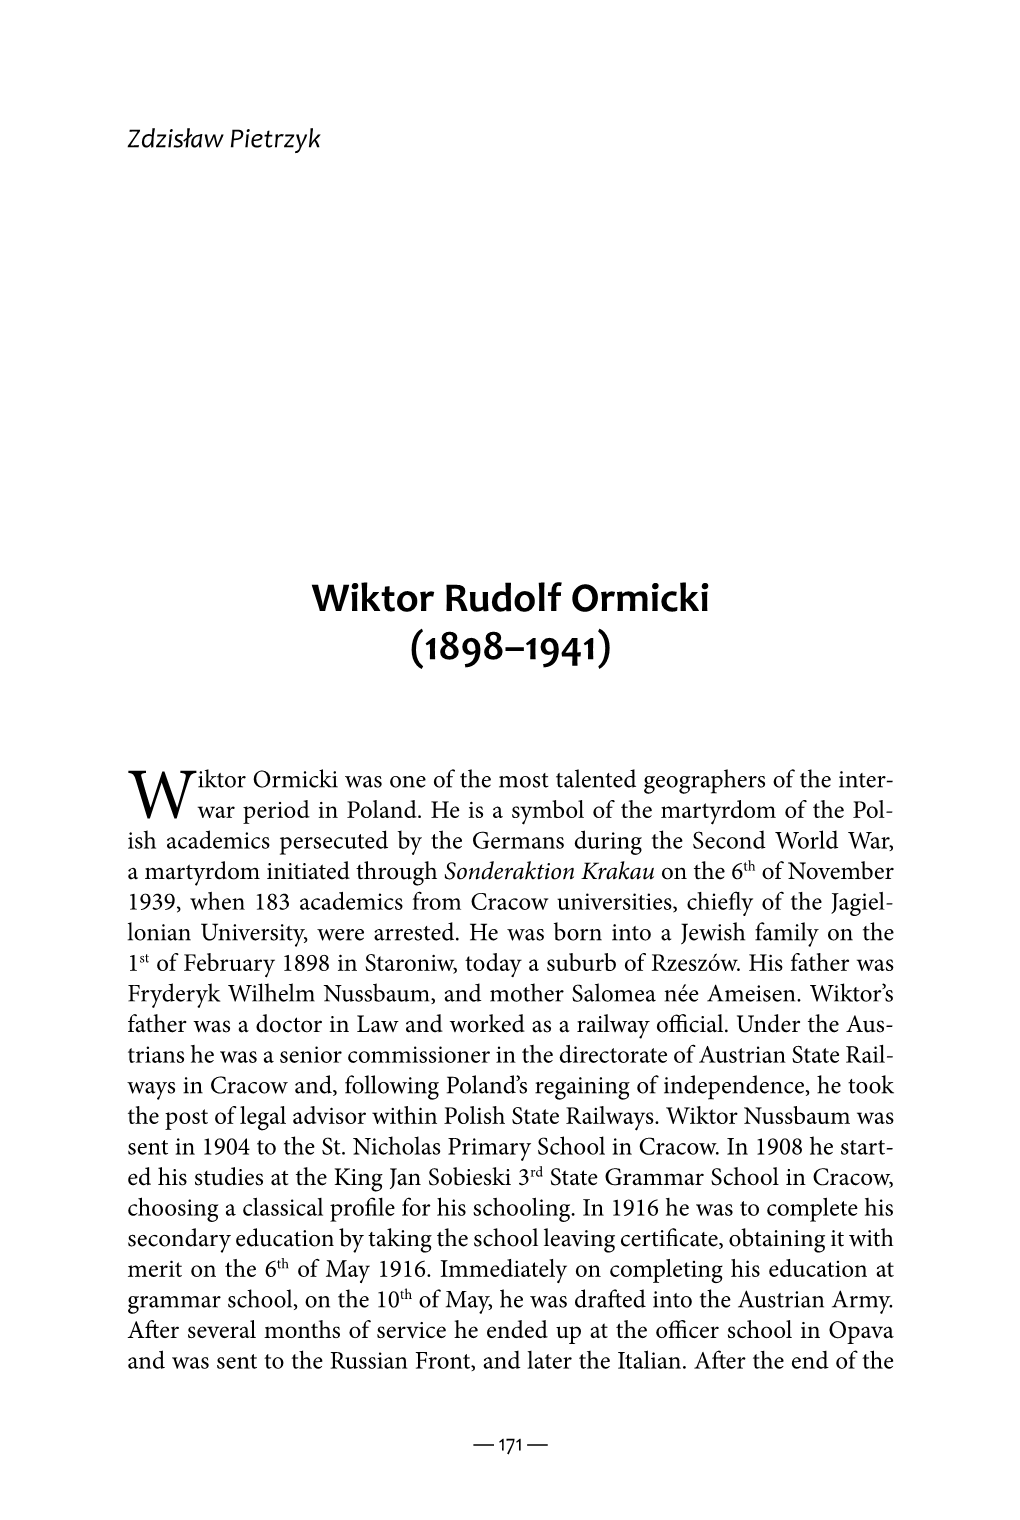 Wiktor Rudolf Ormicki (1898-1941)